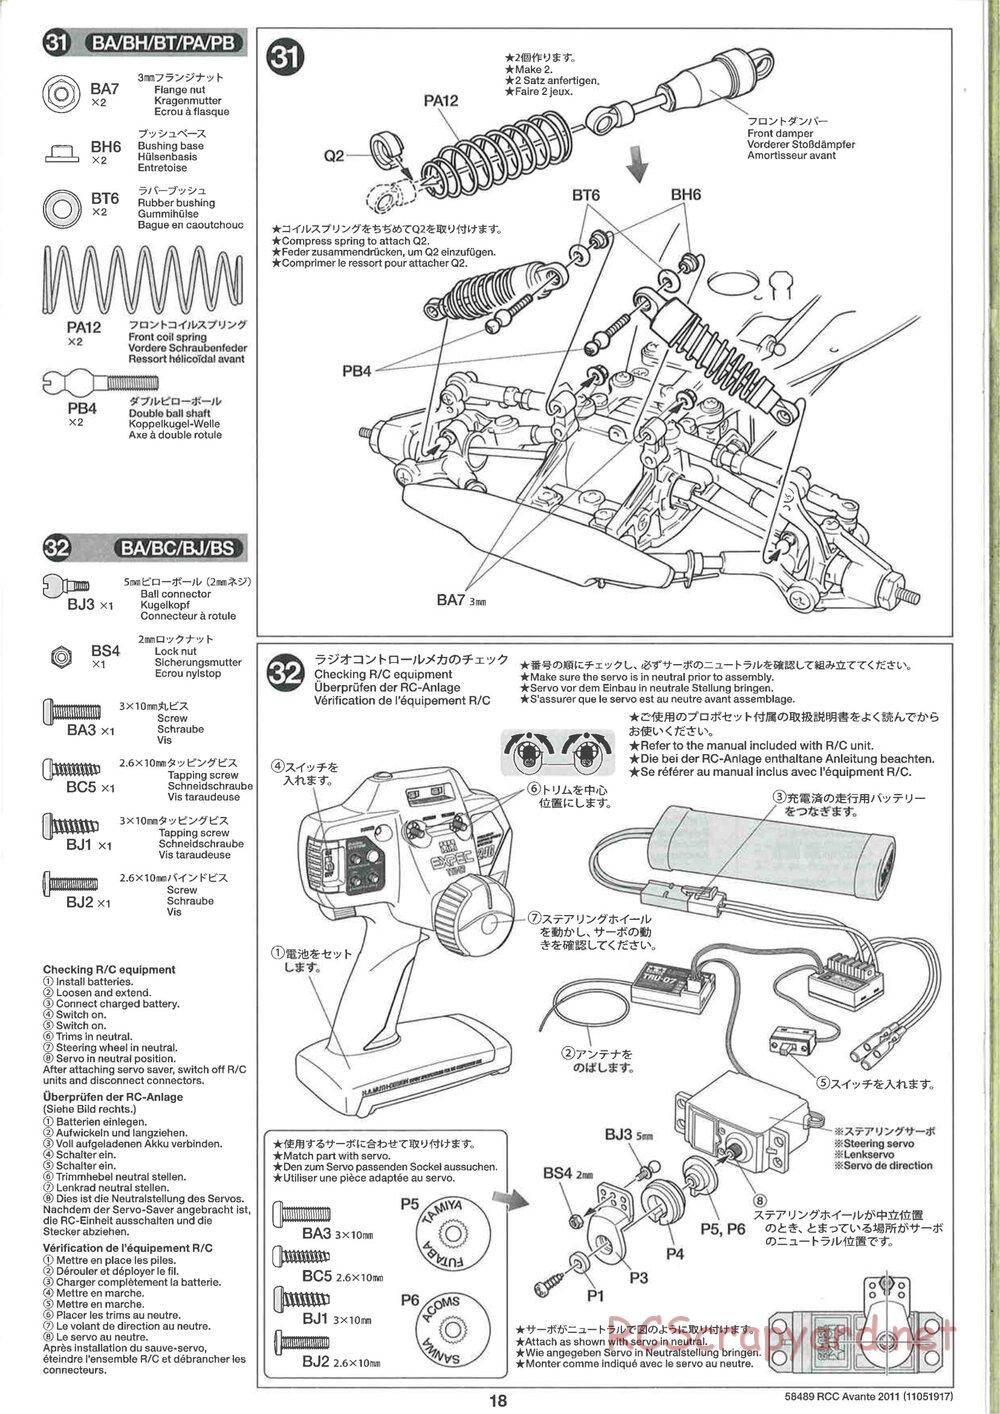 Tamiya - Avante 2011 - AV Chassis - Manual - Page 18